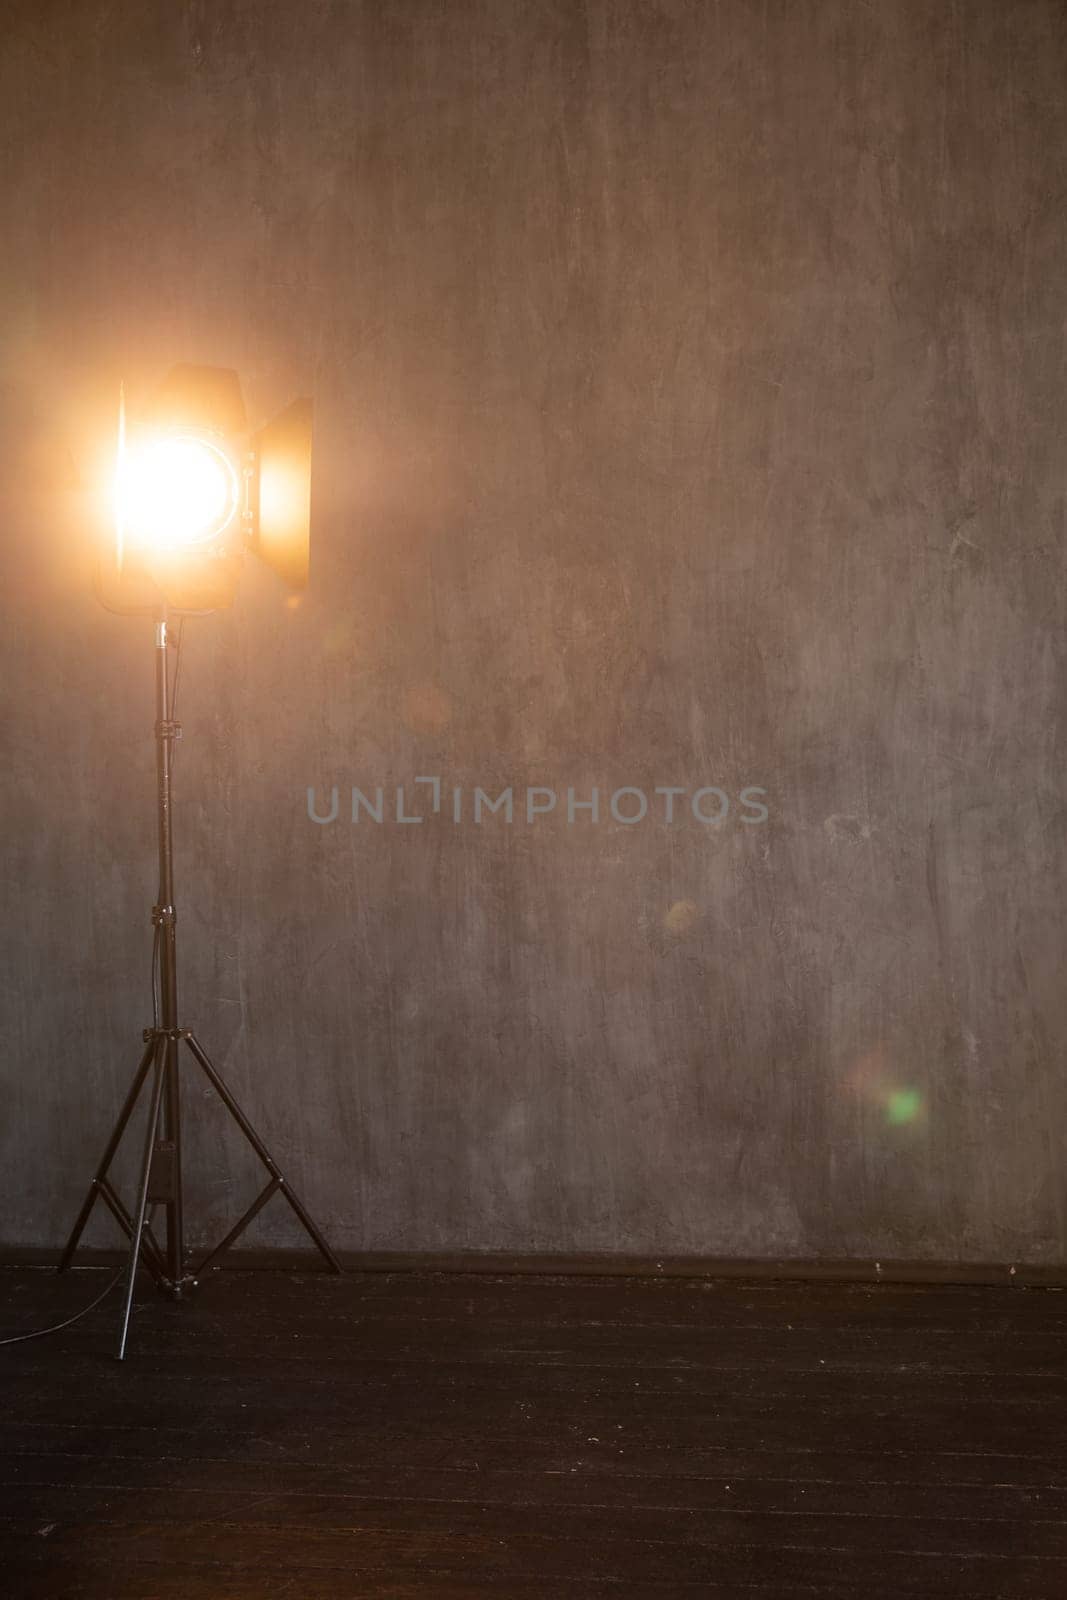 flash near dark background in a photo studio